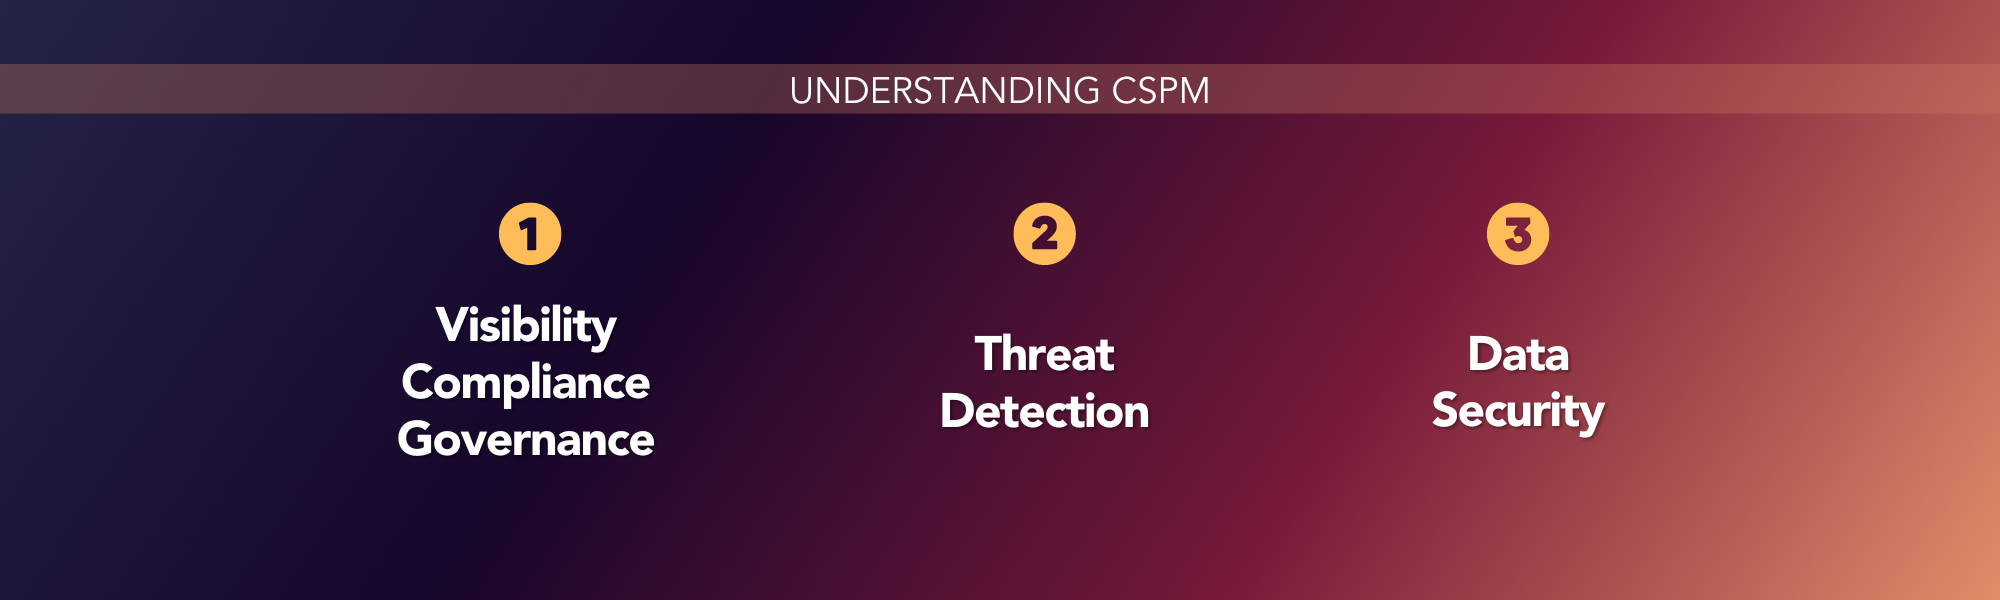 Understanding CSPM